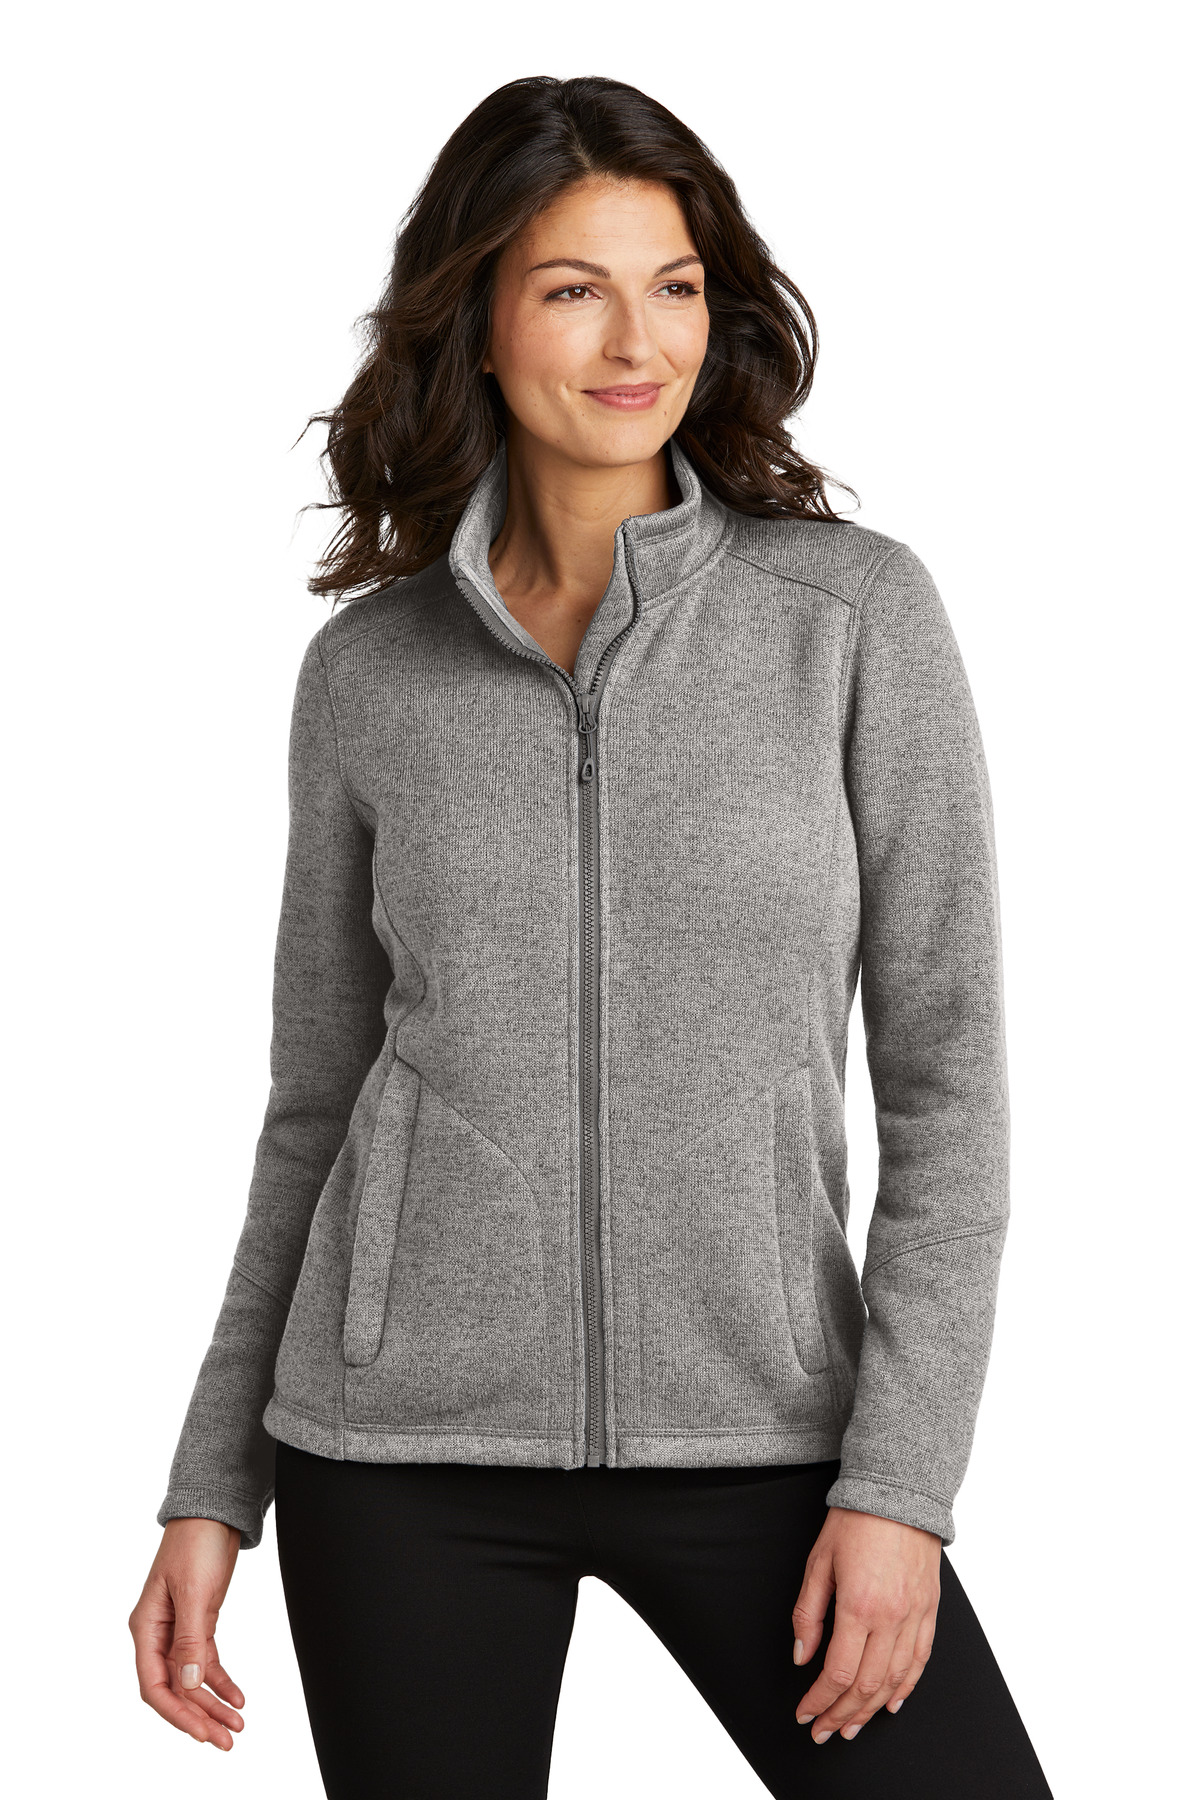 Port Authority Ladies Arc Sweater Fleece Jacket-Port Authority